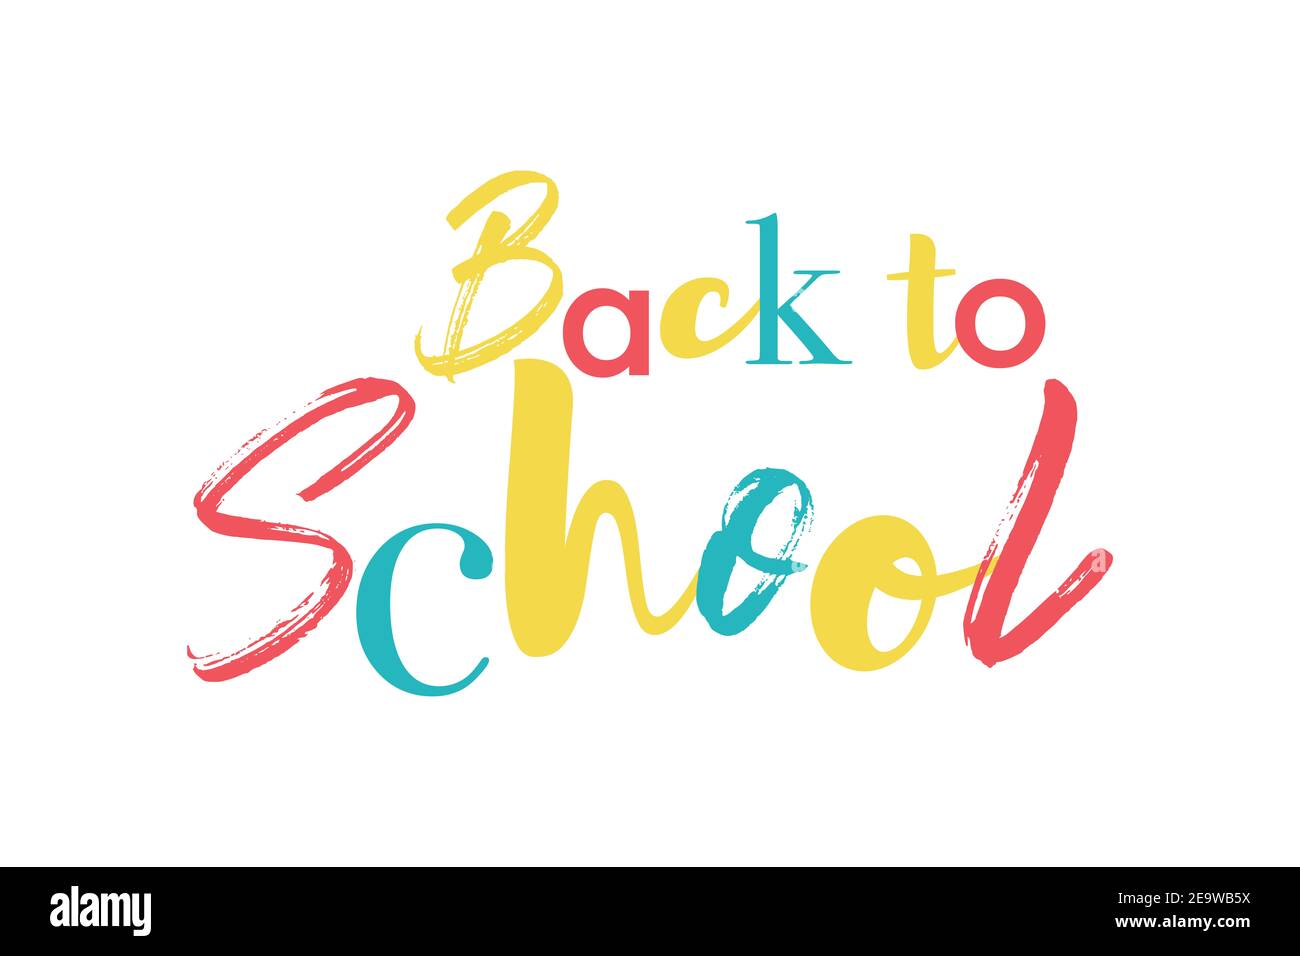 Disegno grafico colorato, divertente e allegro di un detto 'Back to School' in rosso, giallo, blu. Tipografia sperimentale, divertente e creativa. Foto Stock